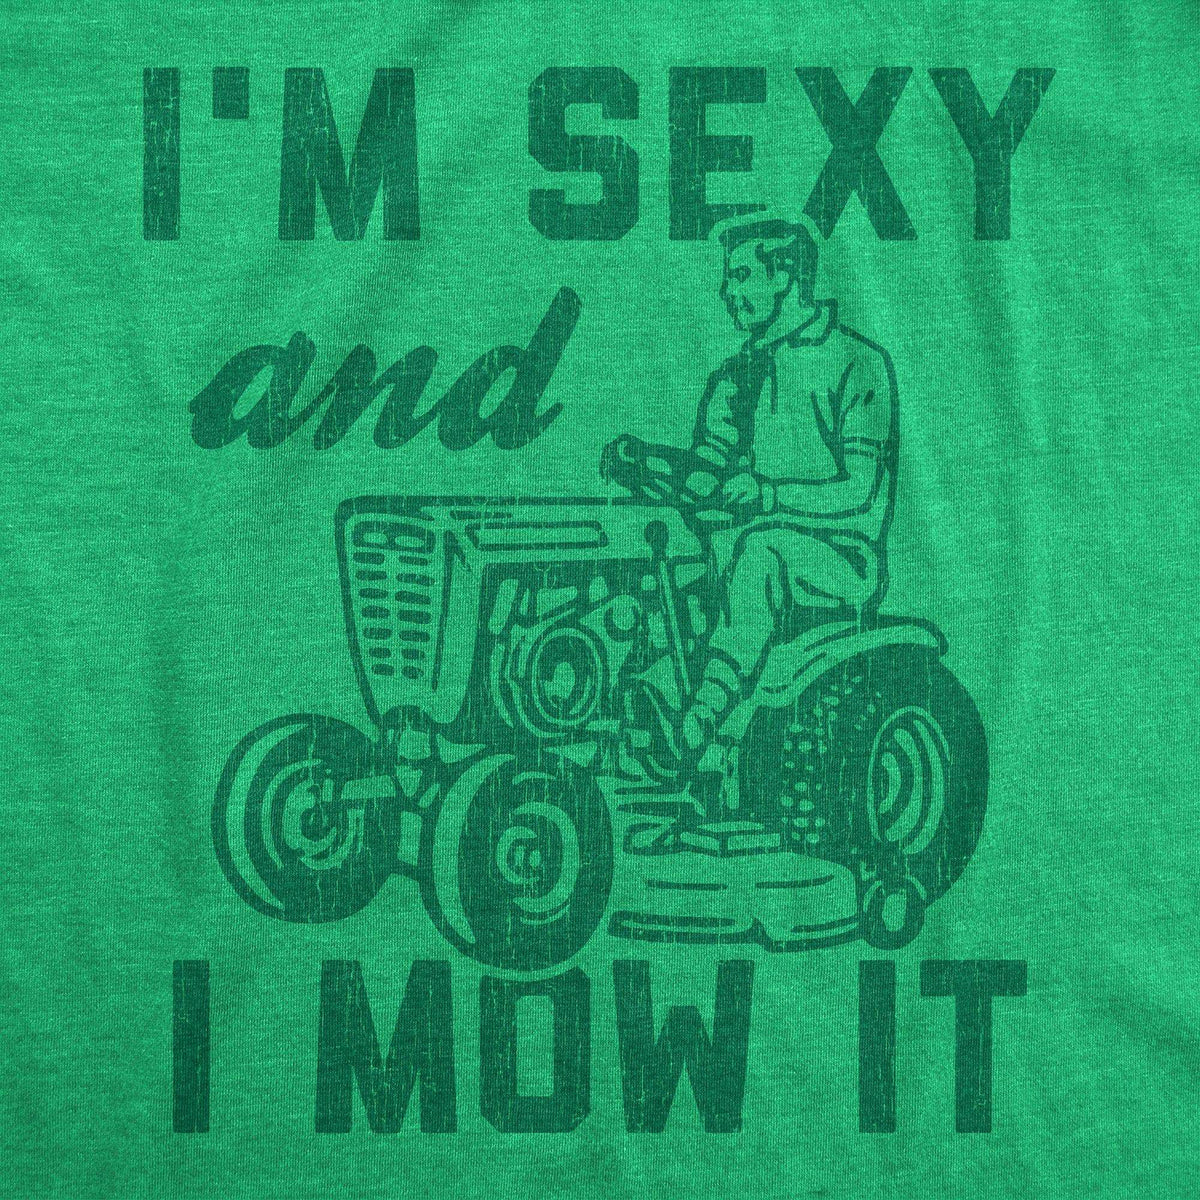 I&#39;m Sexy And I Mow It Men&#39;s Tshirt - Crazy Dog T-Shirts